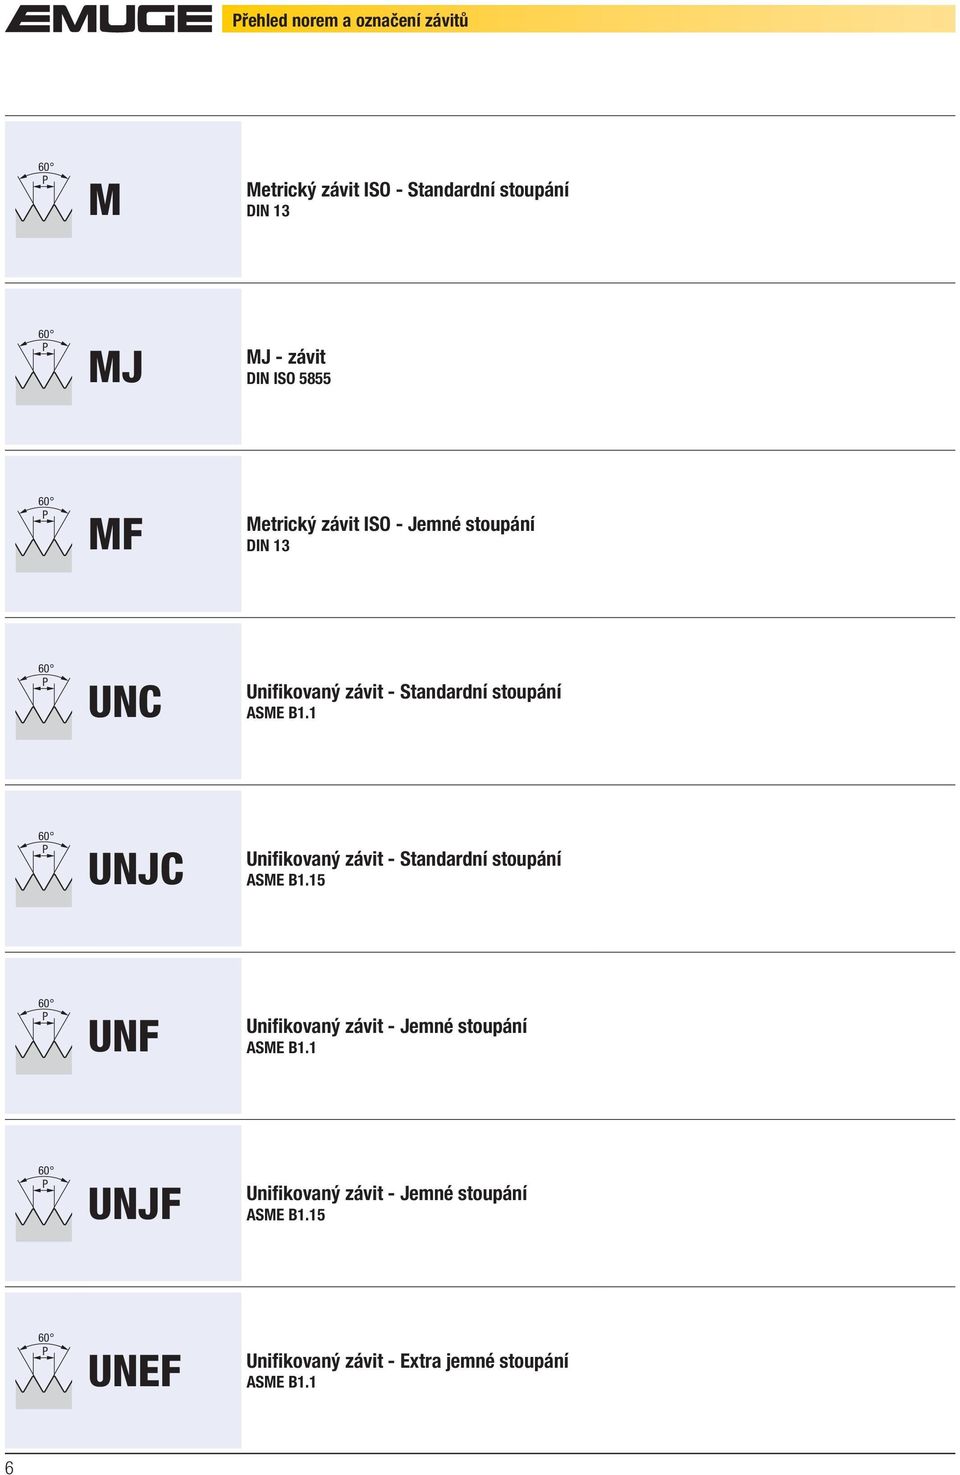 1 60 P UNJC Unifikovaný závit - Standardní stoupání ASME B1.15 60 P UNF Unifikovaný závit - Jemné stoupání ASME B1.